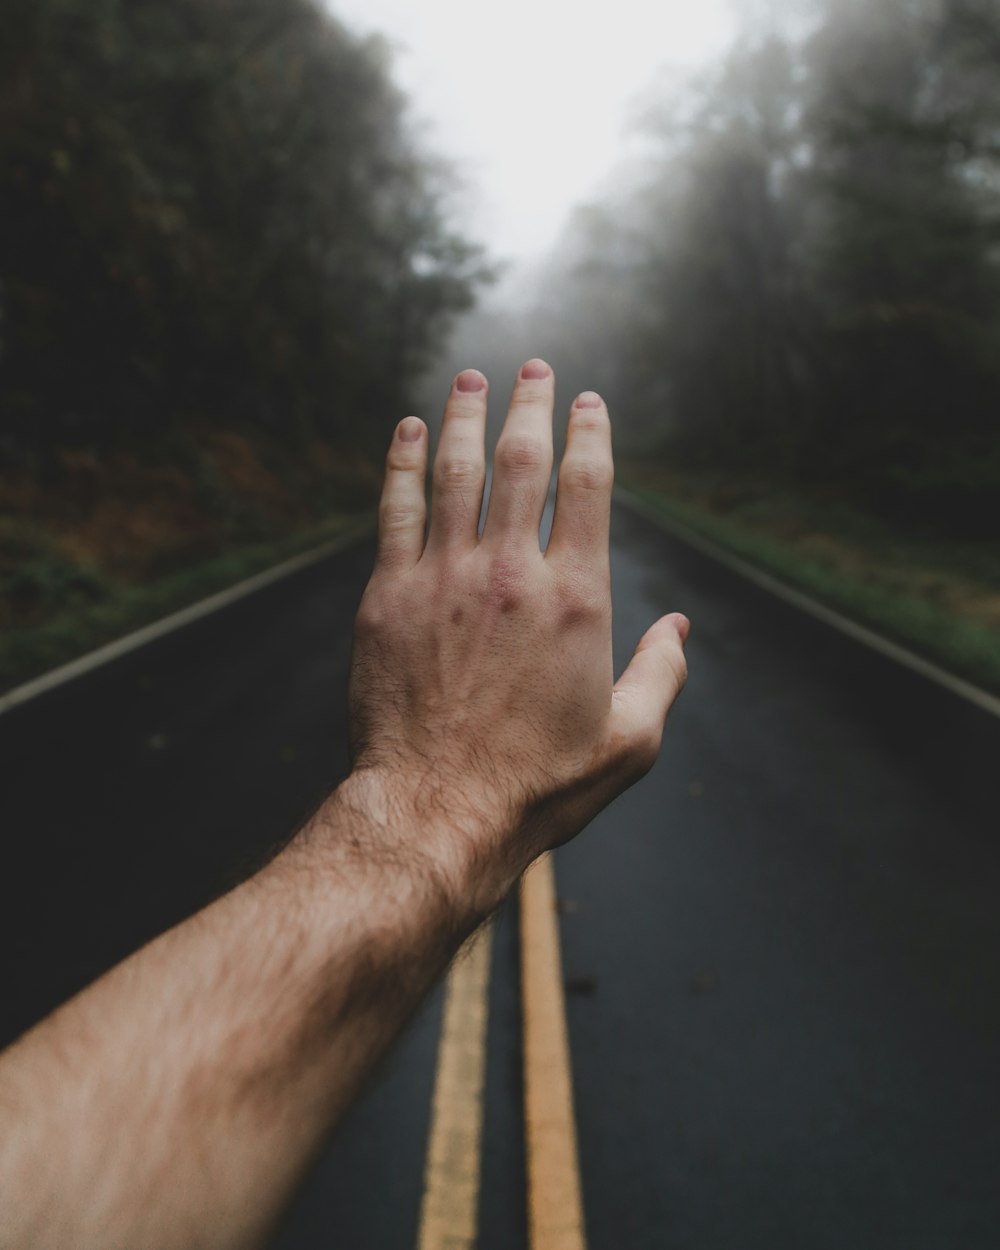 Linke menschliche Hand mitten auf der nebligen Straße